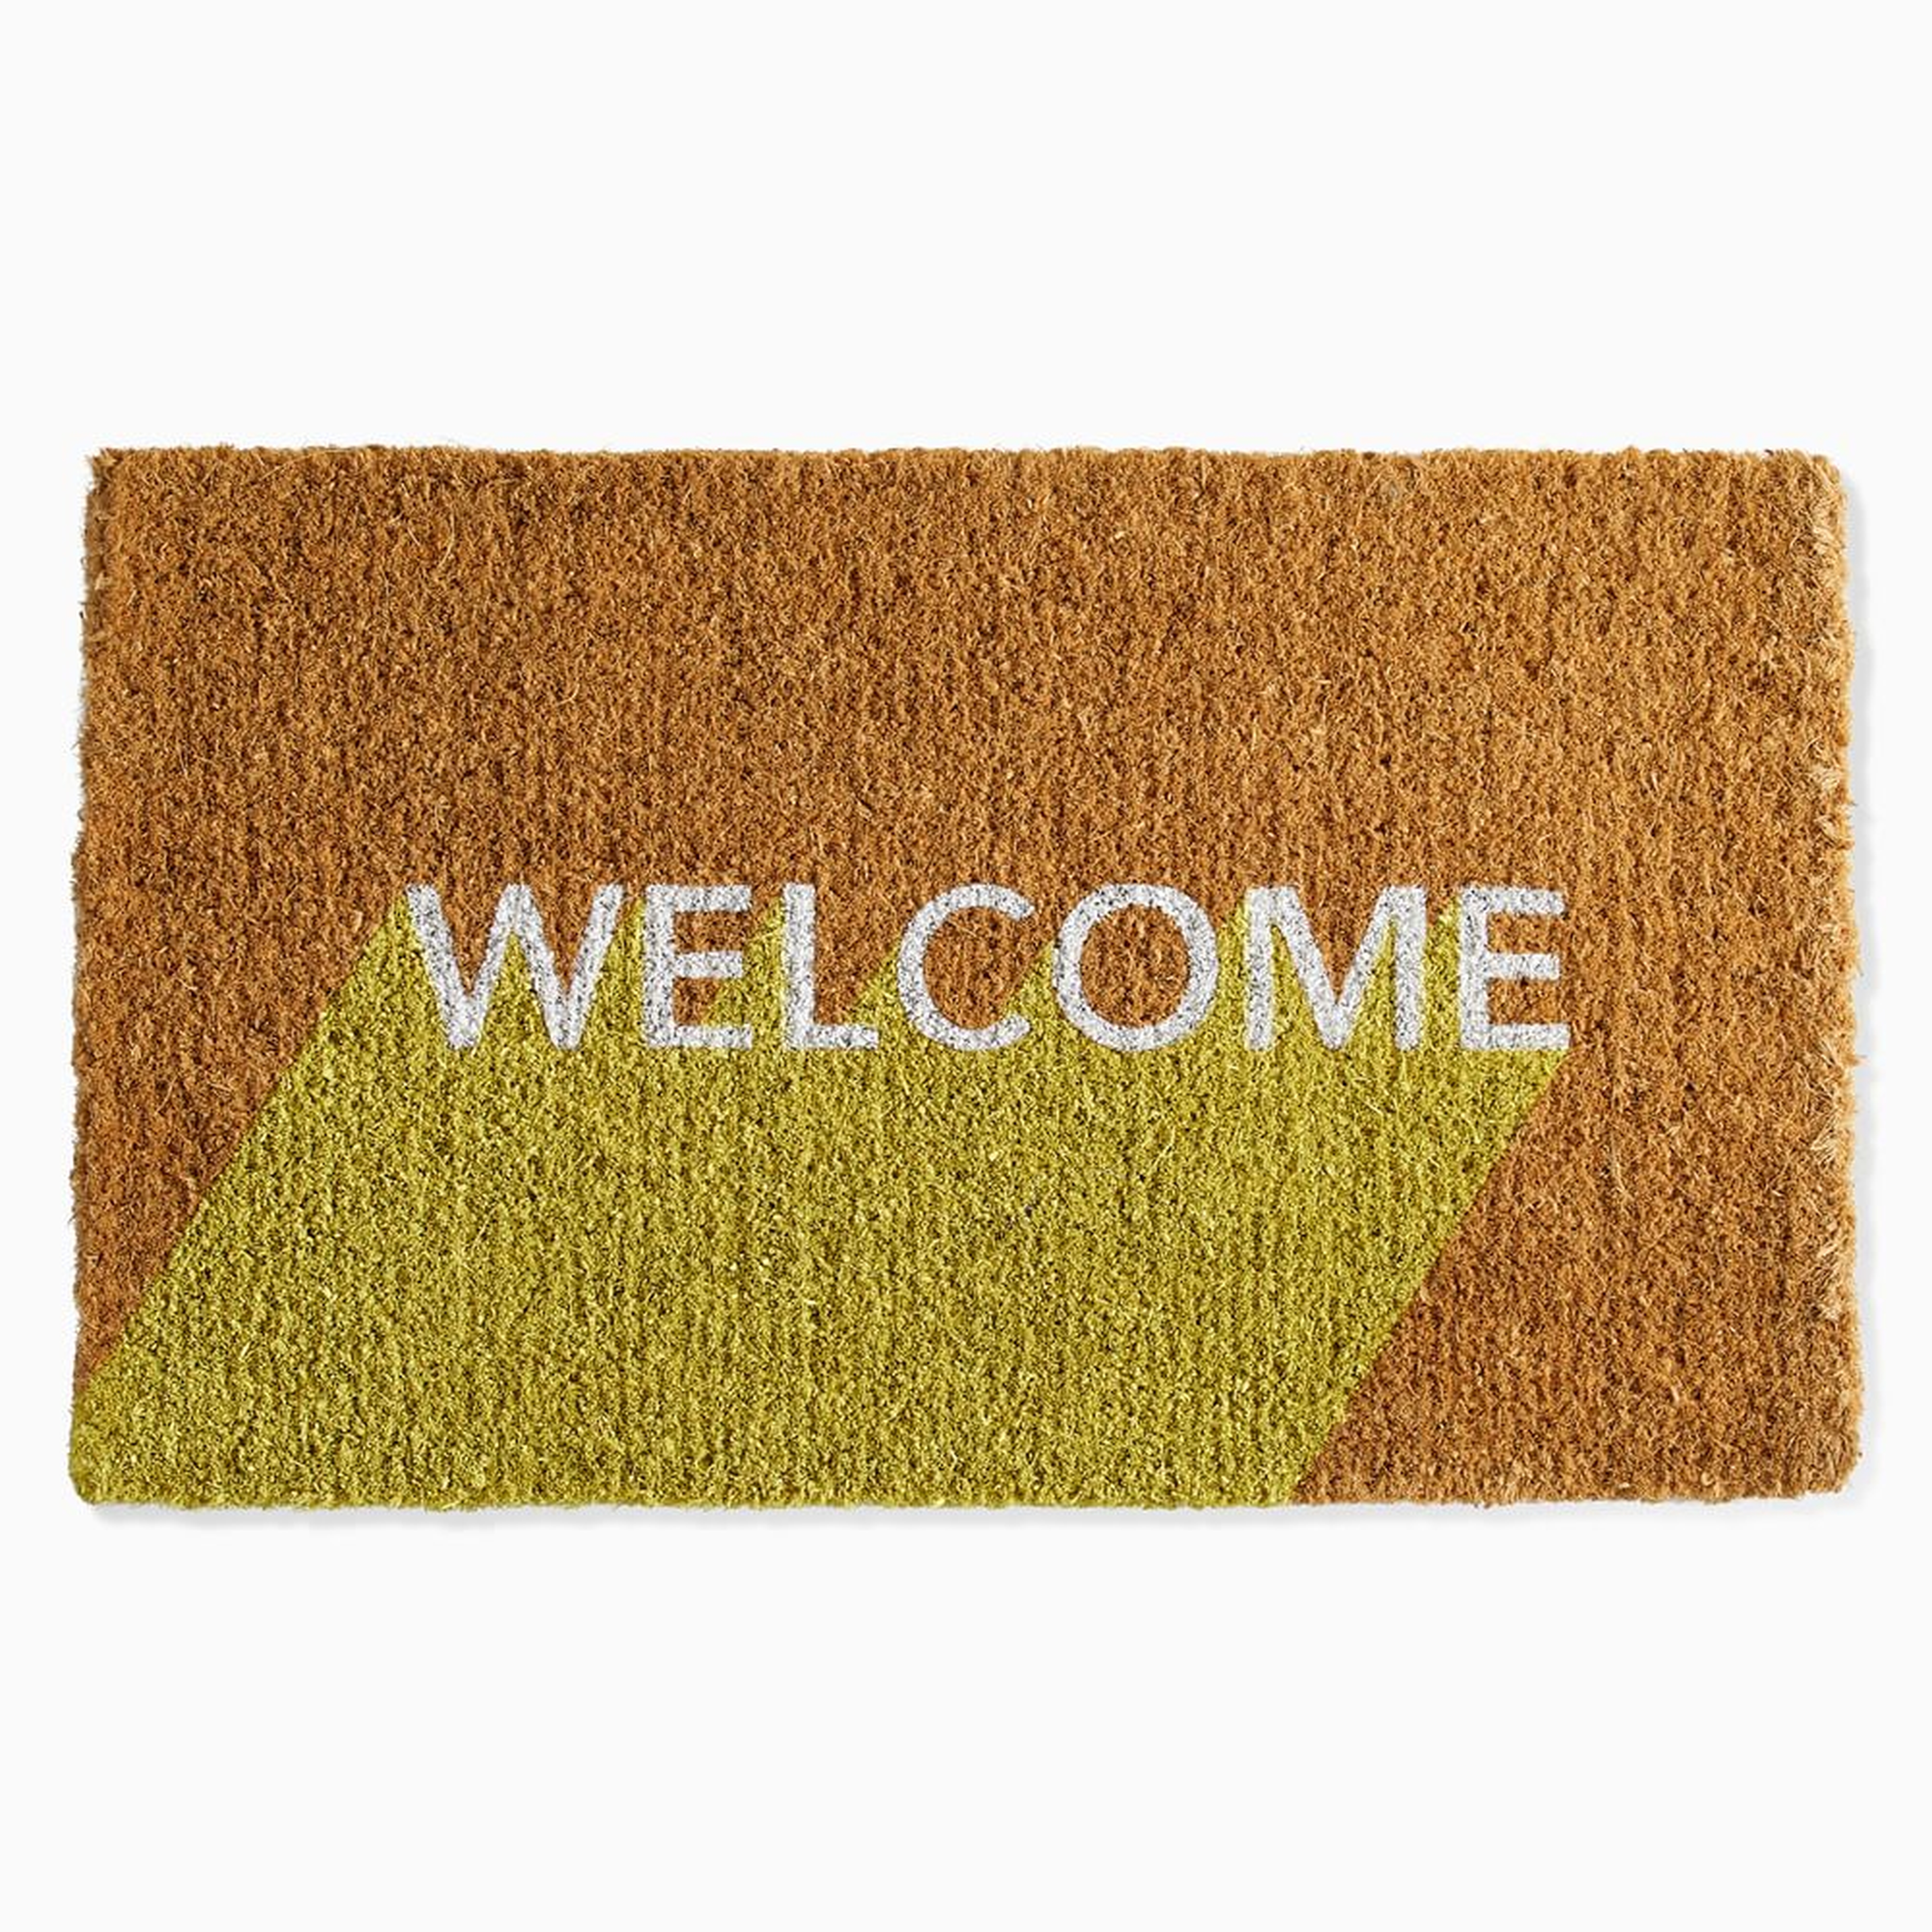 Welcome Block Doormat , 18x30, Sun Yellow - West Elm